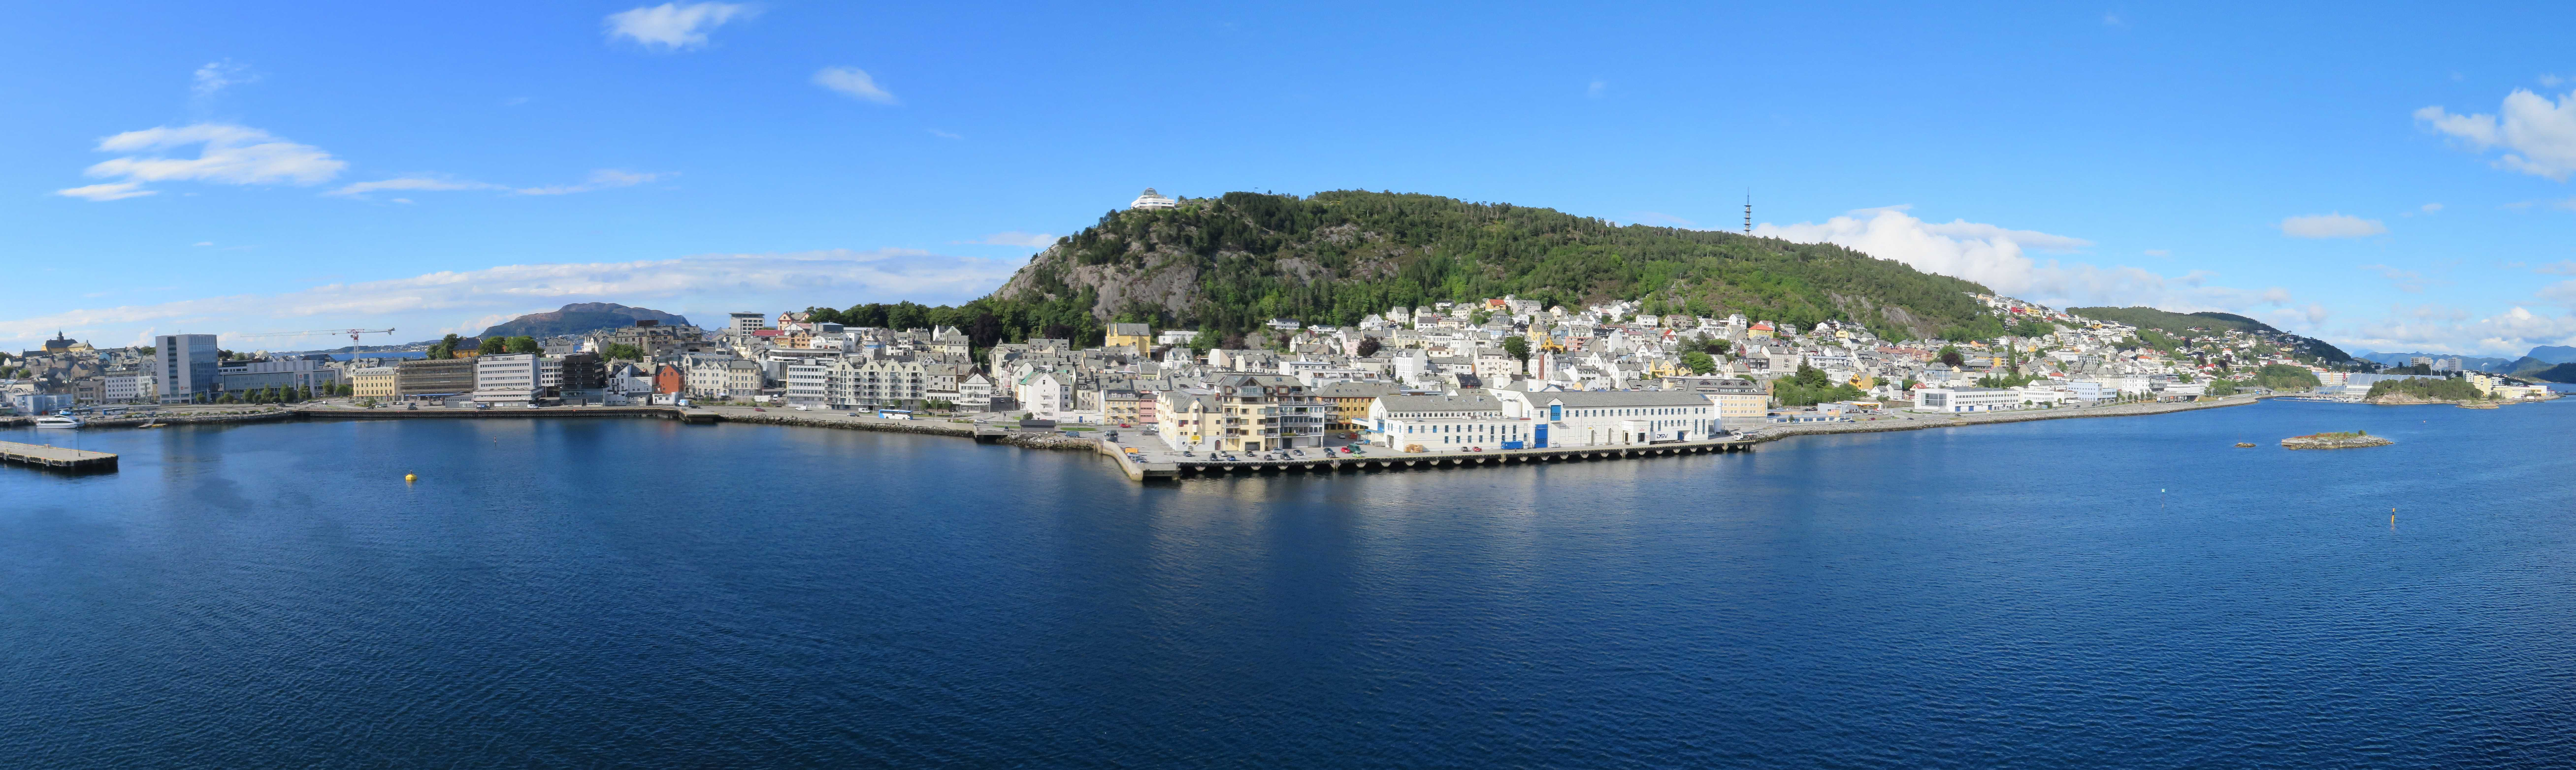 Puerto de Alesund (Noruega): Excursiones por libre - Forum Cruise the Baltic and Fjords